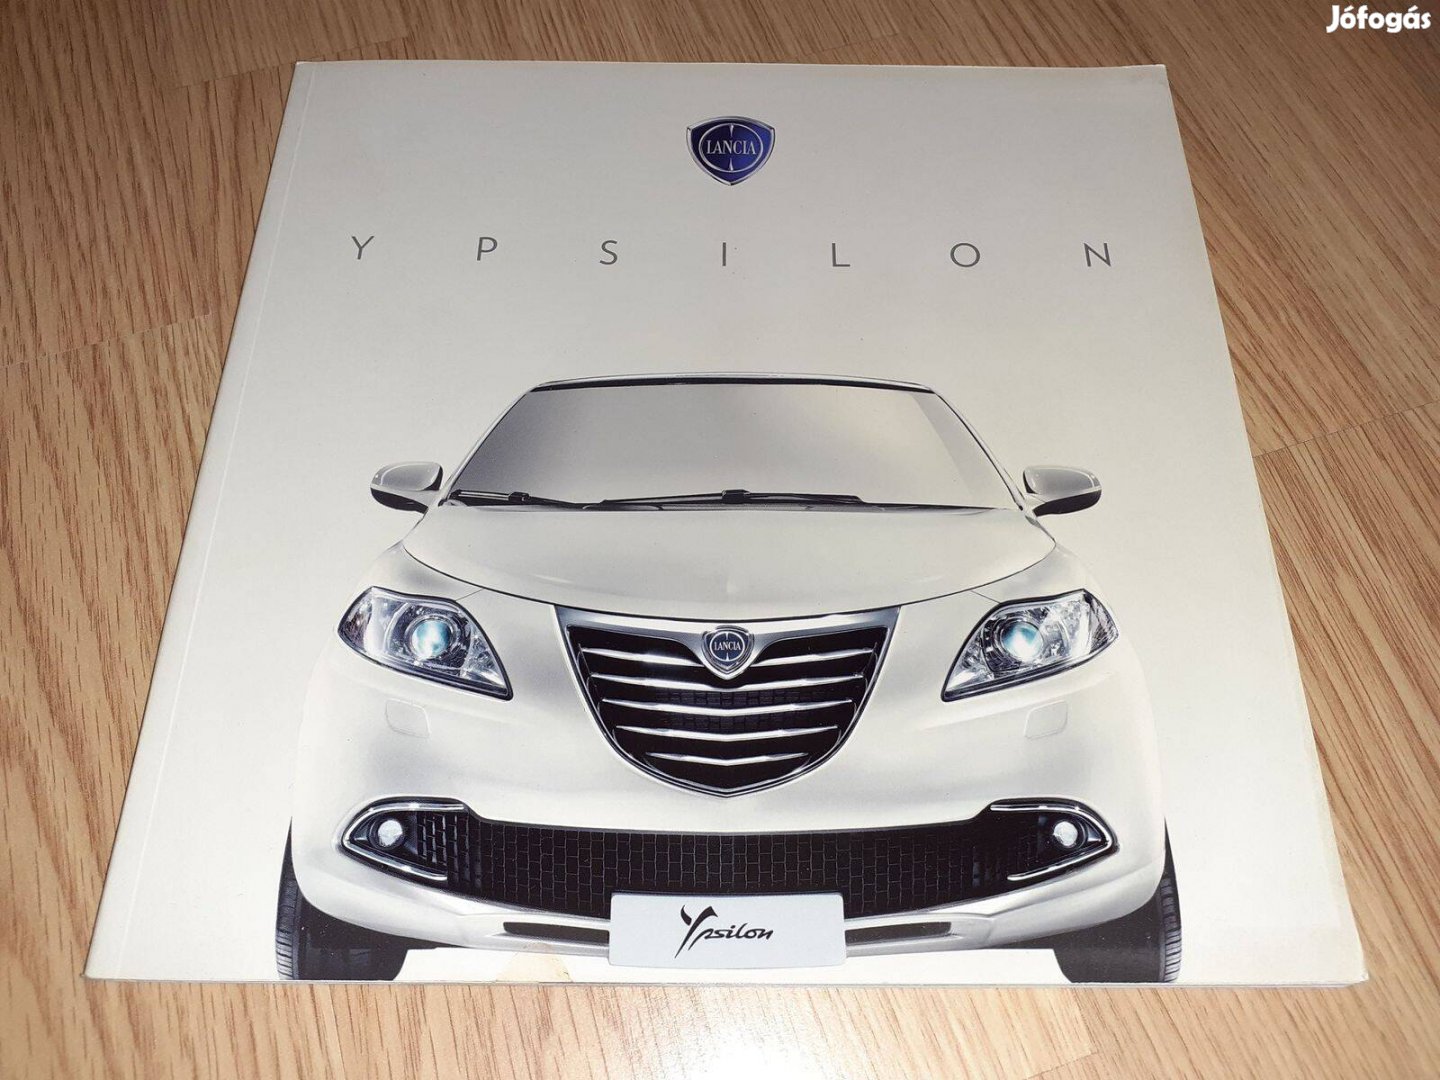 Lancia Ypsilon prospektus - 2011, magyar nyelvű